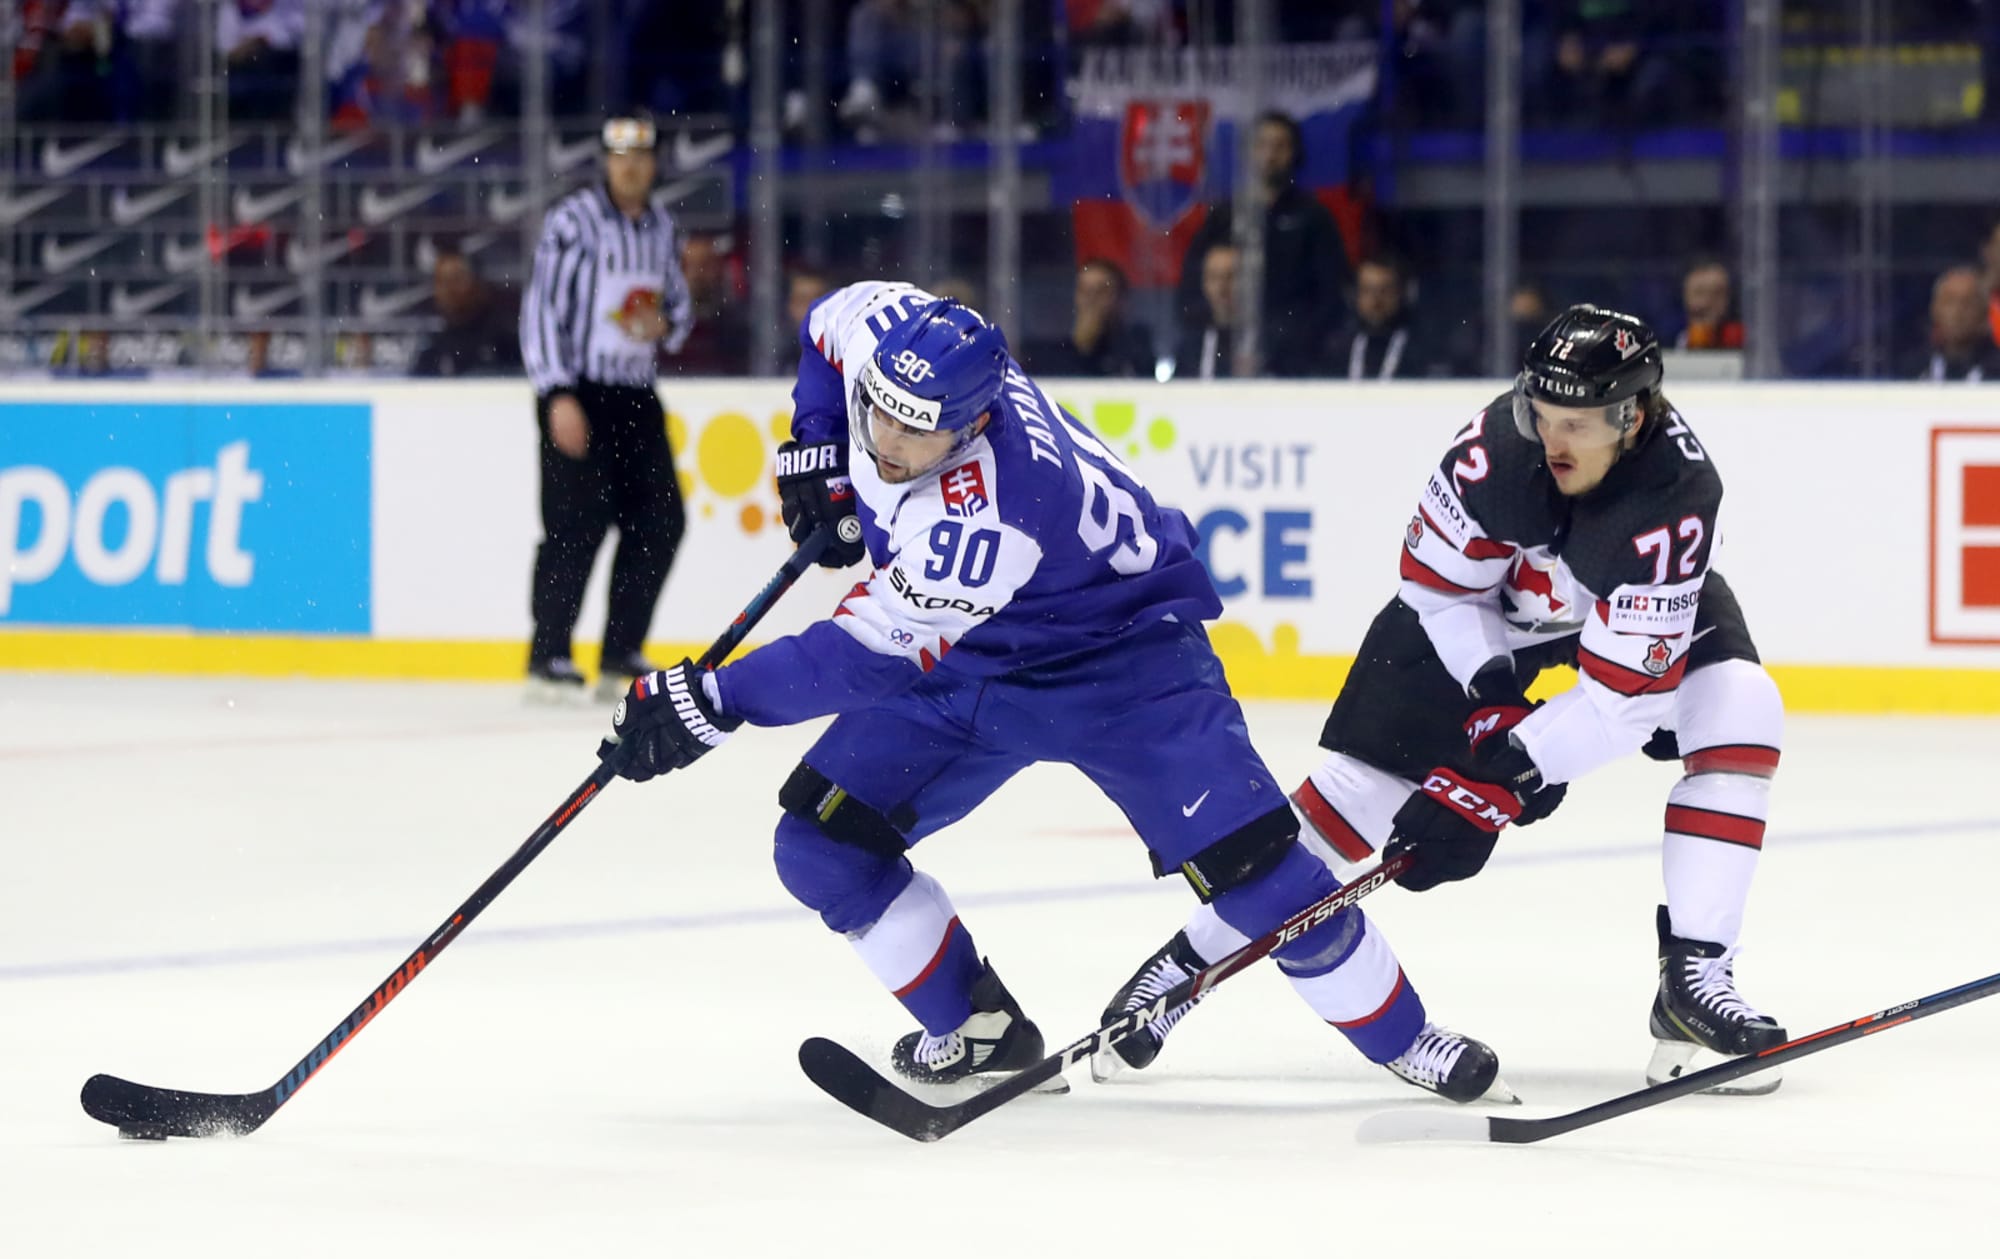 Montreal Canadiens Tomas Tatar Falls To 1-2 At World Championships